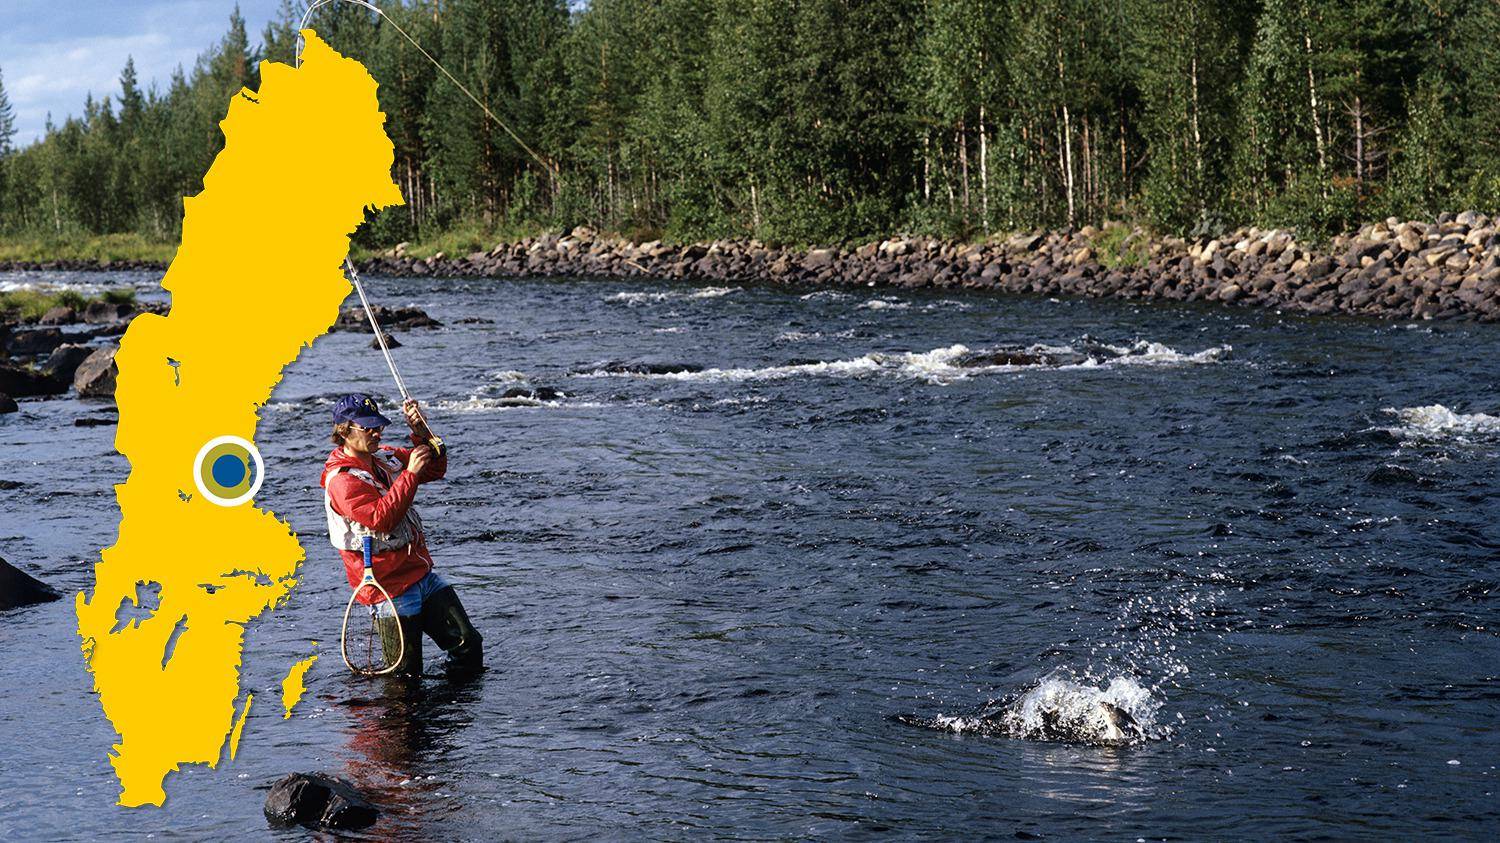 Un homme est debout dans une rivière et pêche à la mouche. Il vient d'attraper un poisson et essaie de le tirer hors de l'eau avec sa canne. Il y a une carte jaune de la Suède avec un point bleu qui indique l'emplacement de Voxnan.